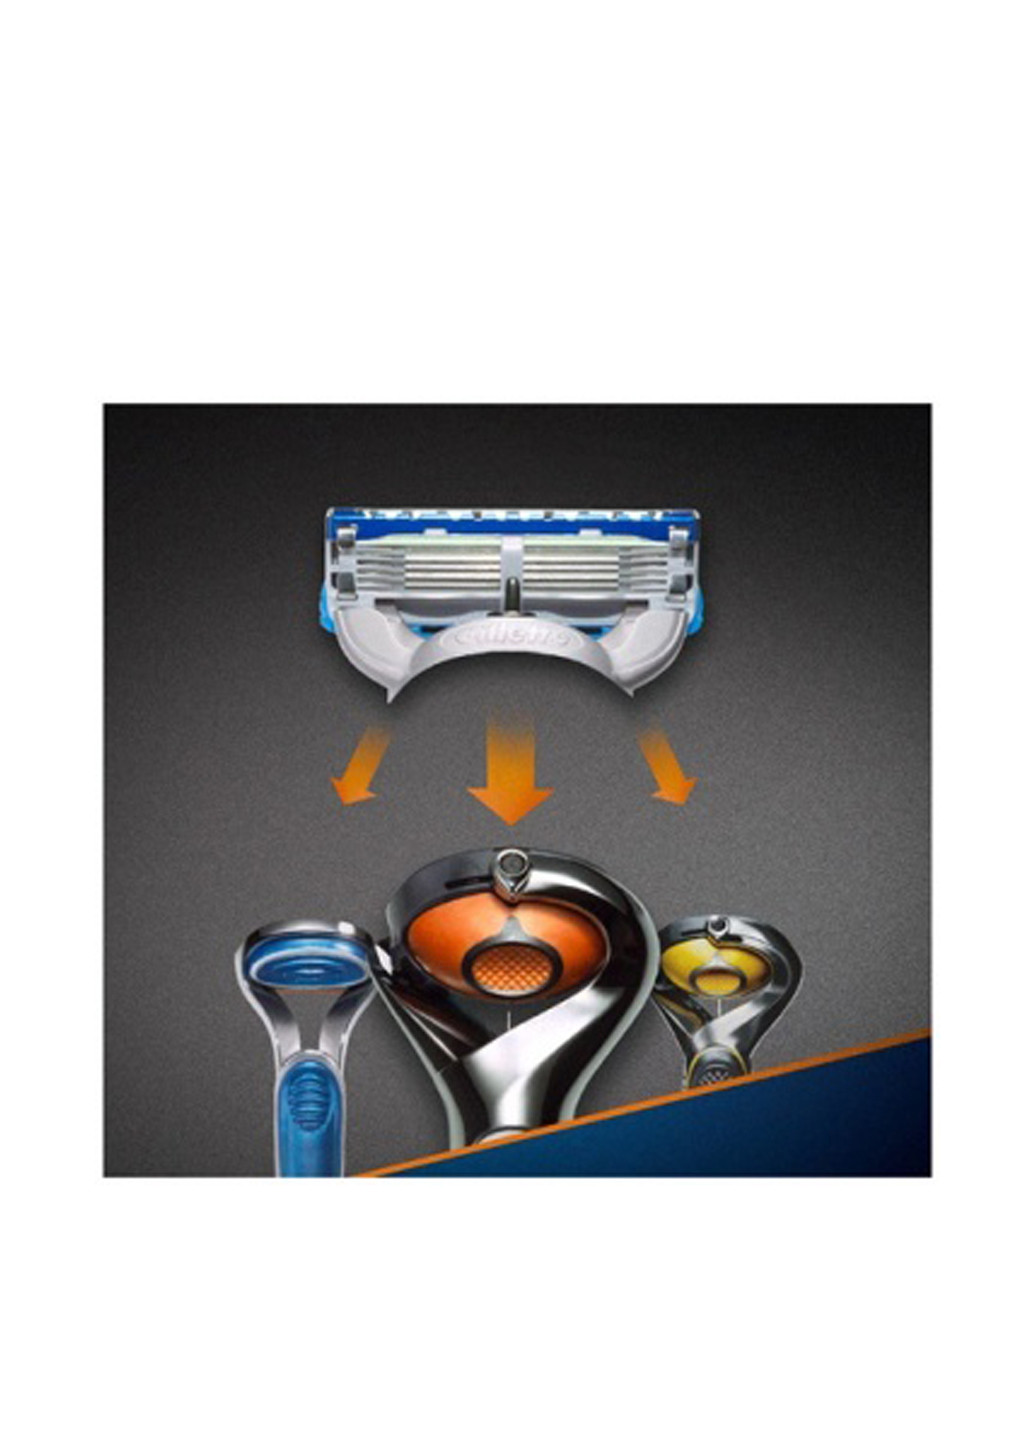 Змінні картриджі для гоління Fusion ProGlide Power (4 шт.) Gillette (138200687)